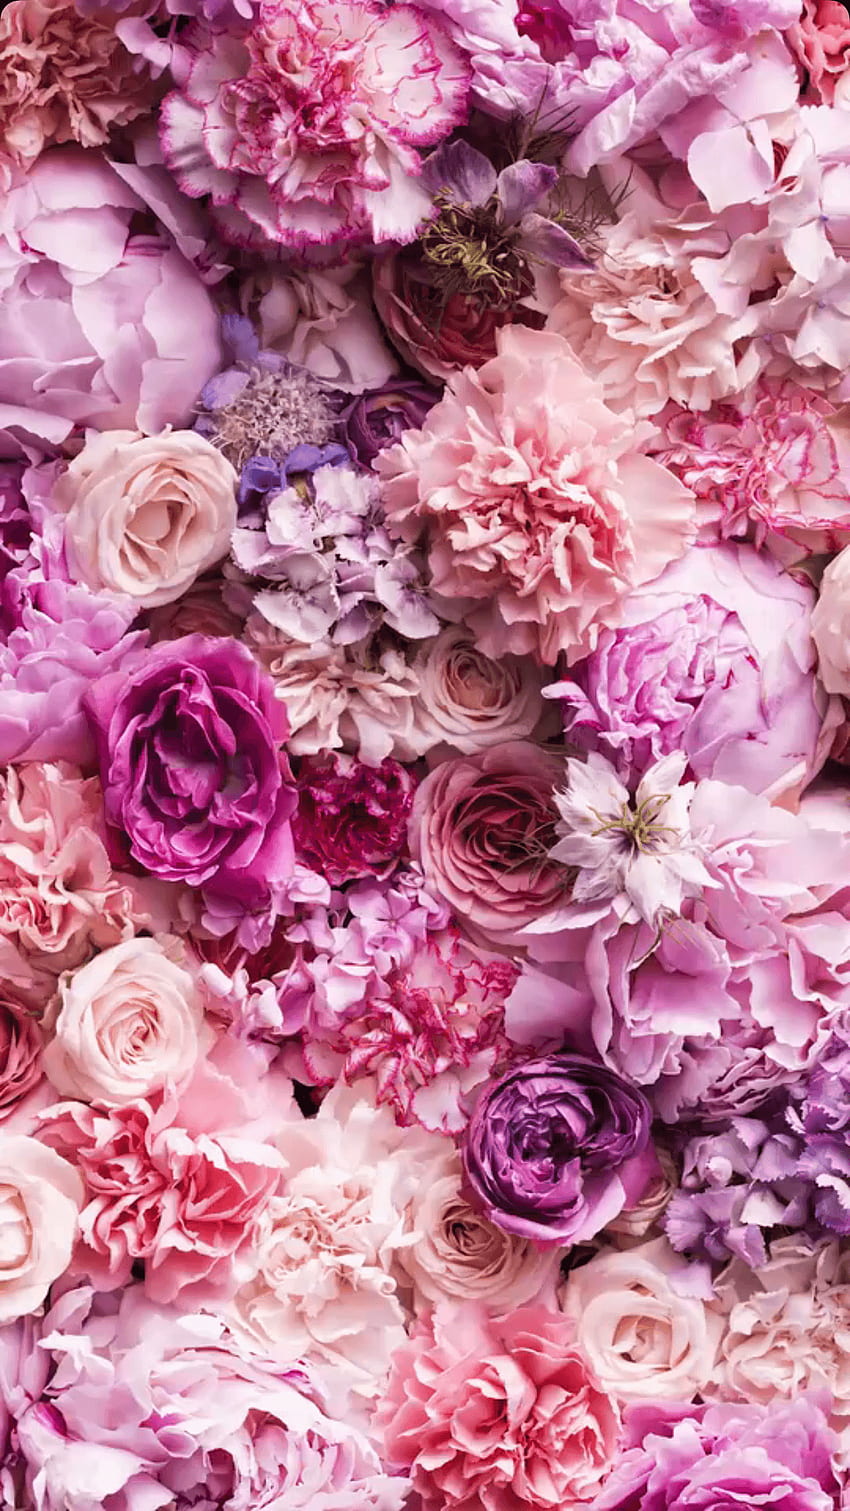 Hãy chiêm ngưỡng vẻ đẹp tuyệt vời của hoa cổ điển trong hình ảnh này! Hoa cổ điển mang đến cho bạn một cảm giác thanh lịch và sang trọng. Khám phá hoa này và bạn sẽ yêu thích nó ngay lập tức!